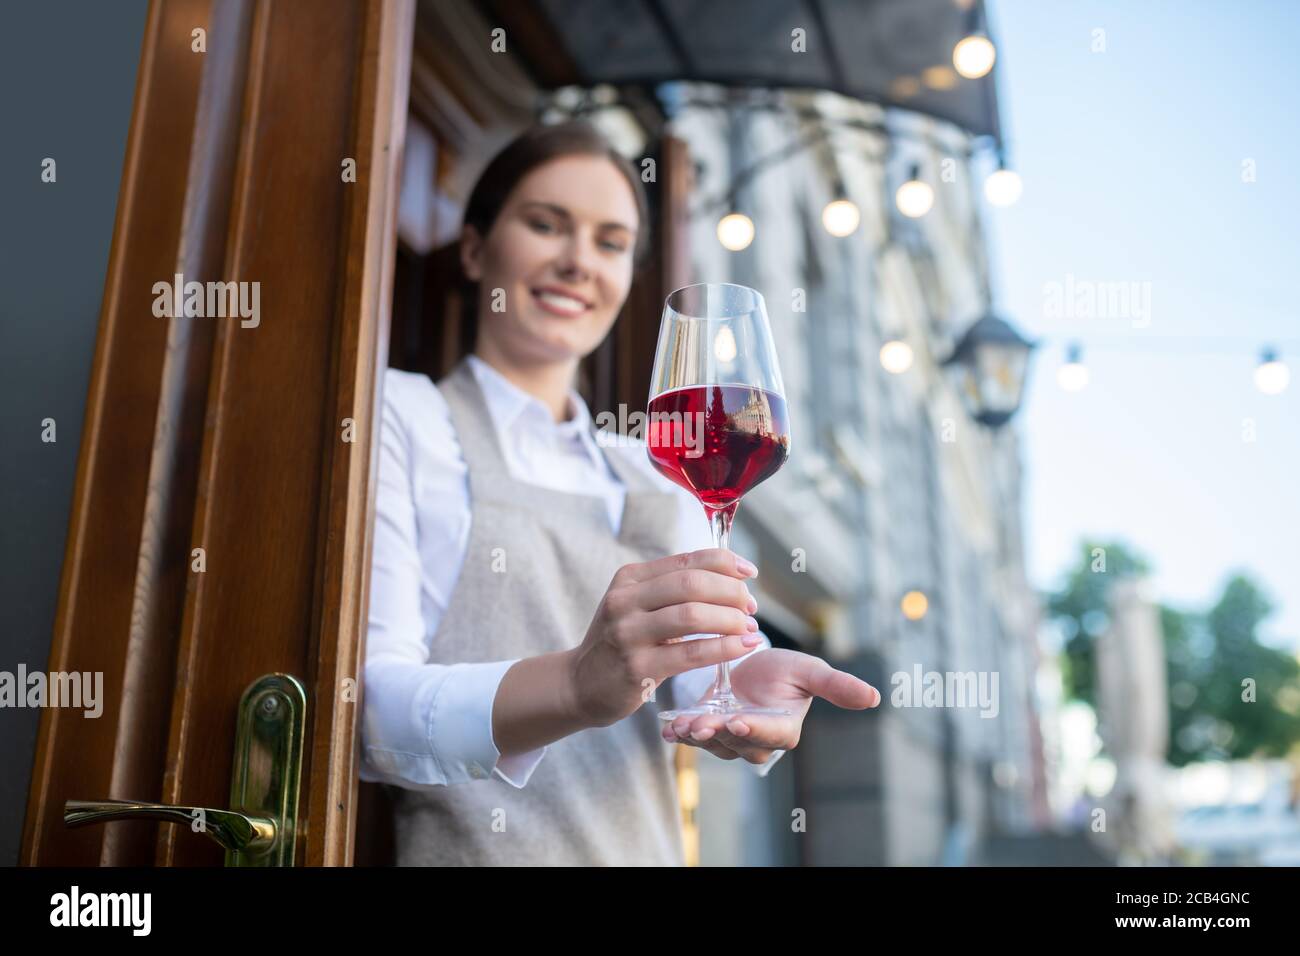 Jolie serveuse souriante sur un tablier gris offrant un verre de vin Banque D'Images